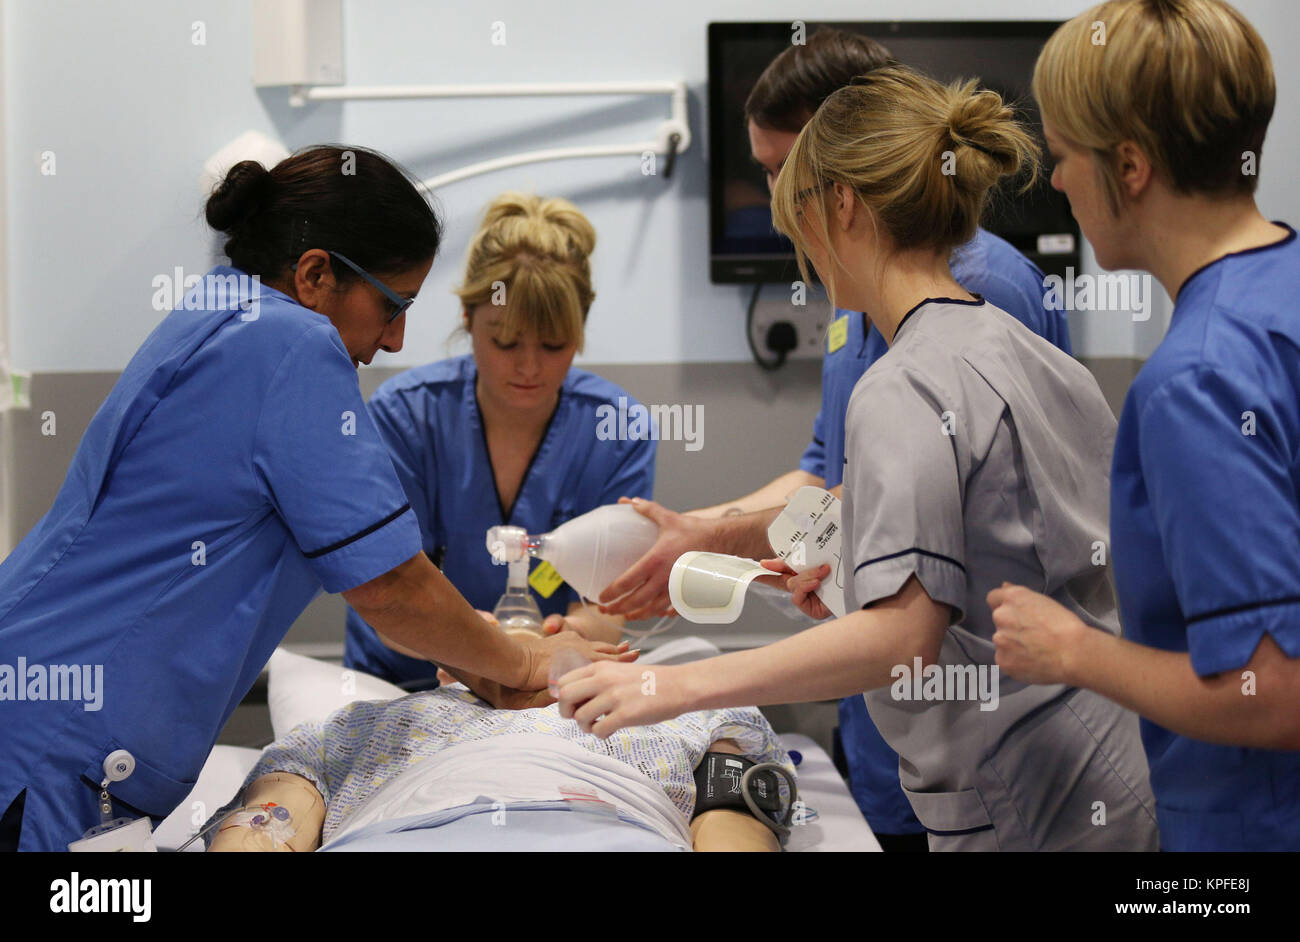 Una sesión de enseñanza sobre reanimación cardio-pulmonar (CPR) tiene lugar en un entorno simulado de ward durante una visita del Secretario de Finanzas escocés Derek Mackay al centro de enseñanza y aprendizaje, el Queen Elizabeth Hospital Universitario, Glasgow. Foto de stock